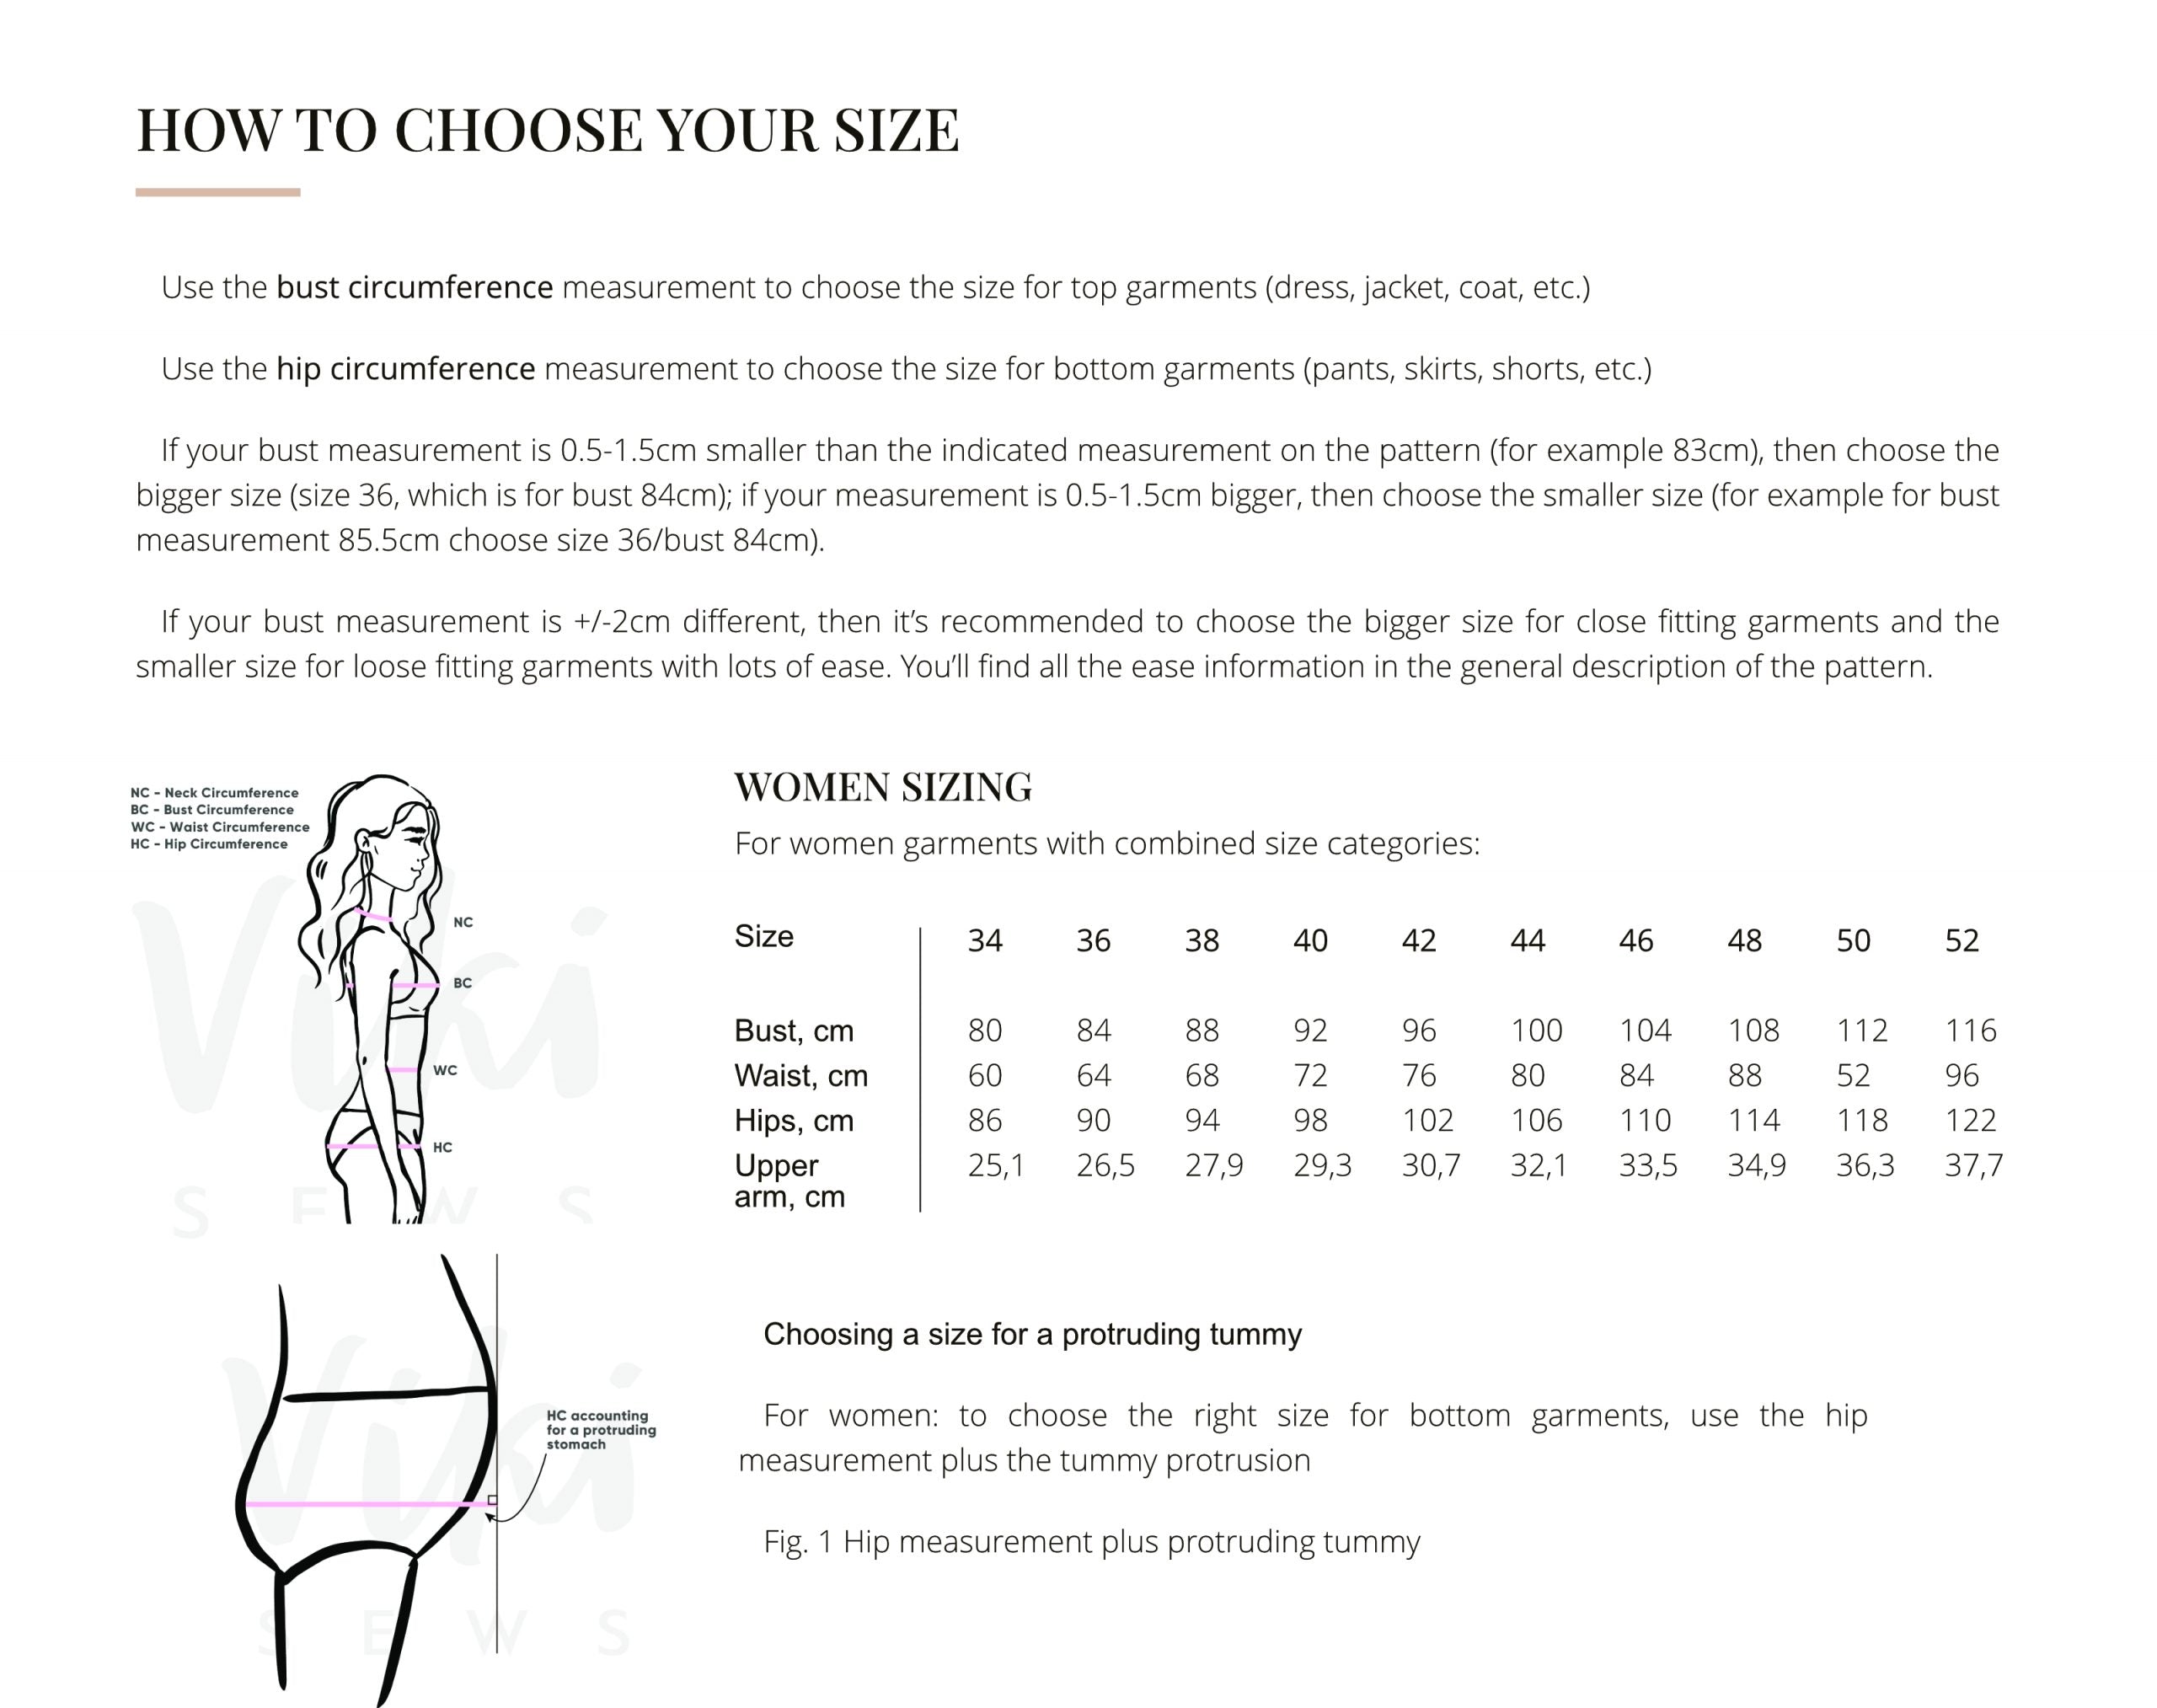 Vikisews Flavia Dress PDF